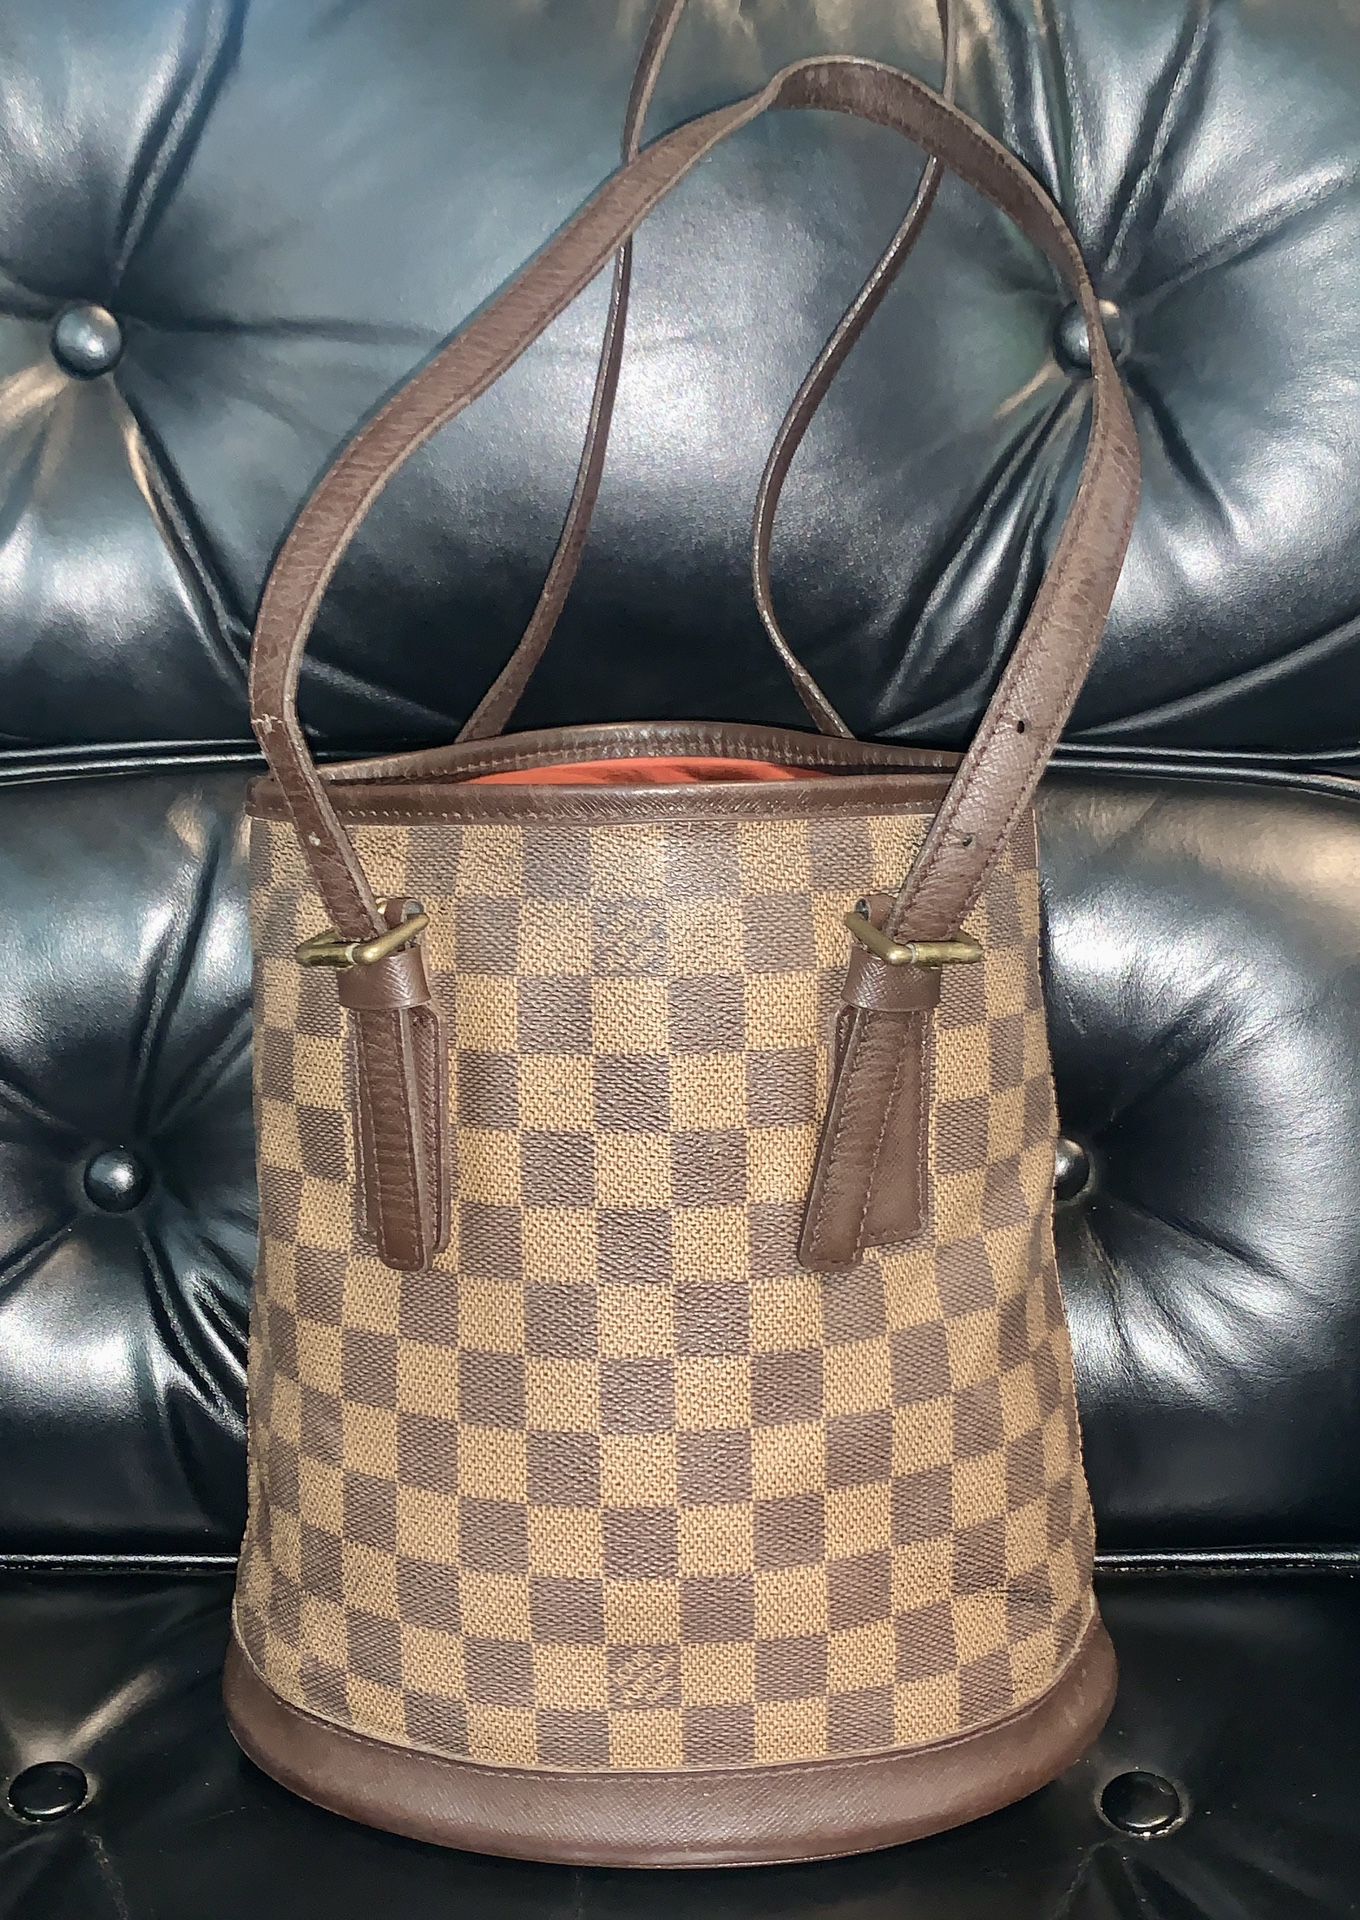 100% Authentic Louis Vuitton Damier Marais Bucket Tote Bag N42240